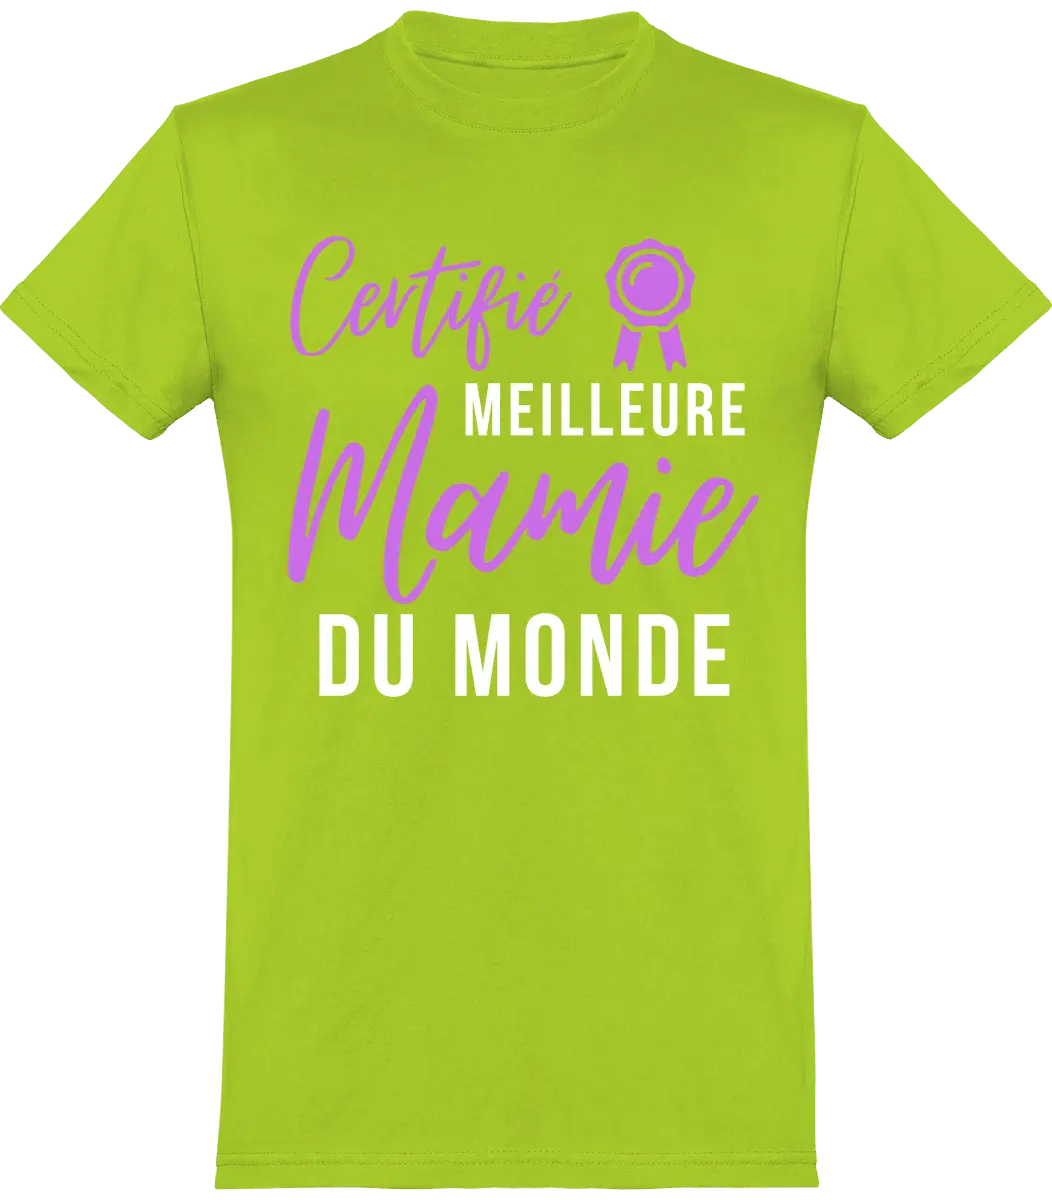 T-shirt mamie "certifié meilleur mamie du monde" | Mixte - French Humour